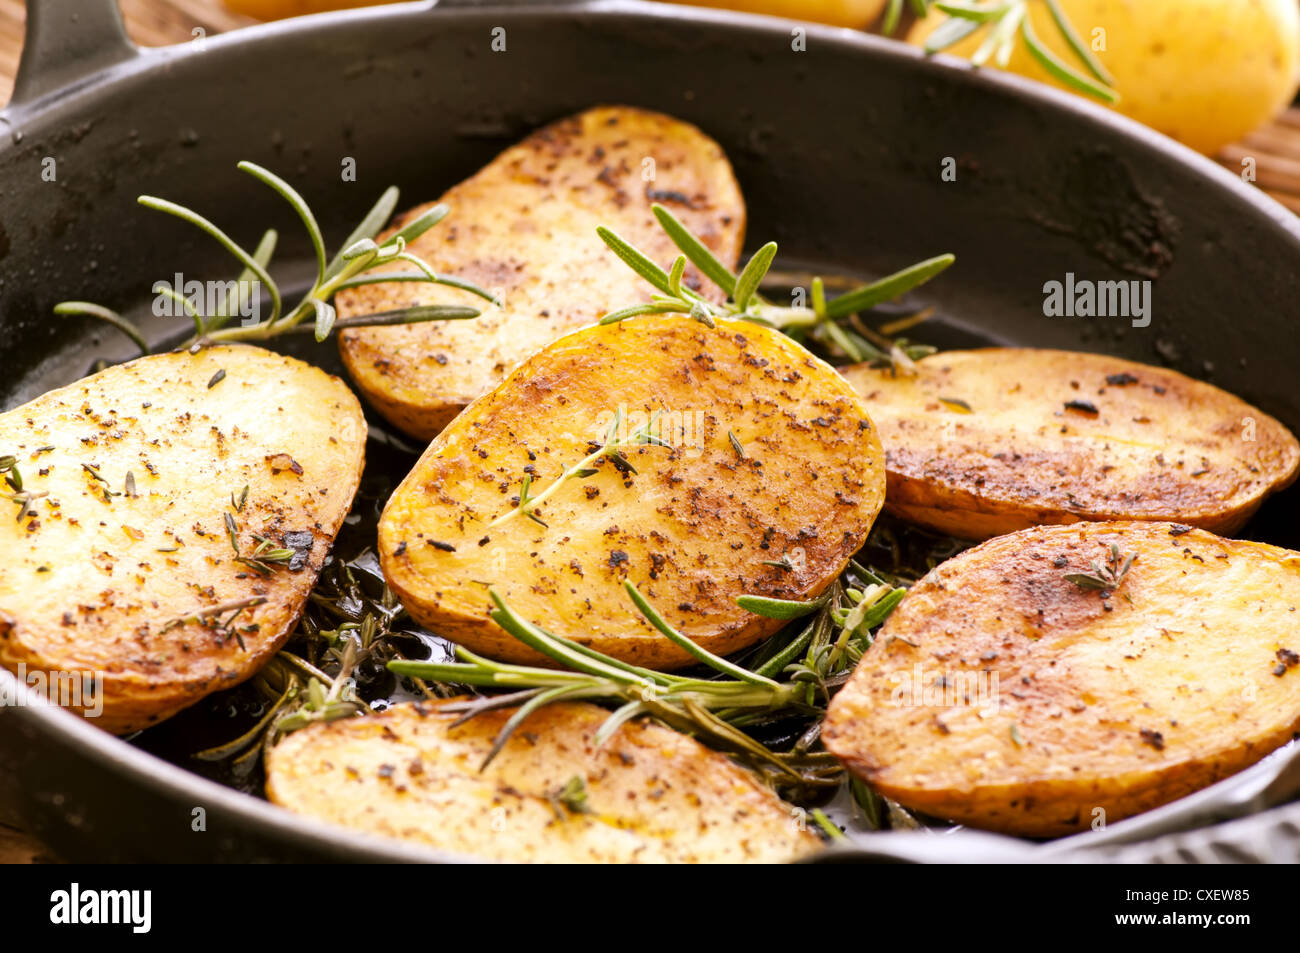 Roasted potato with rosemary Stock Photo